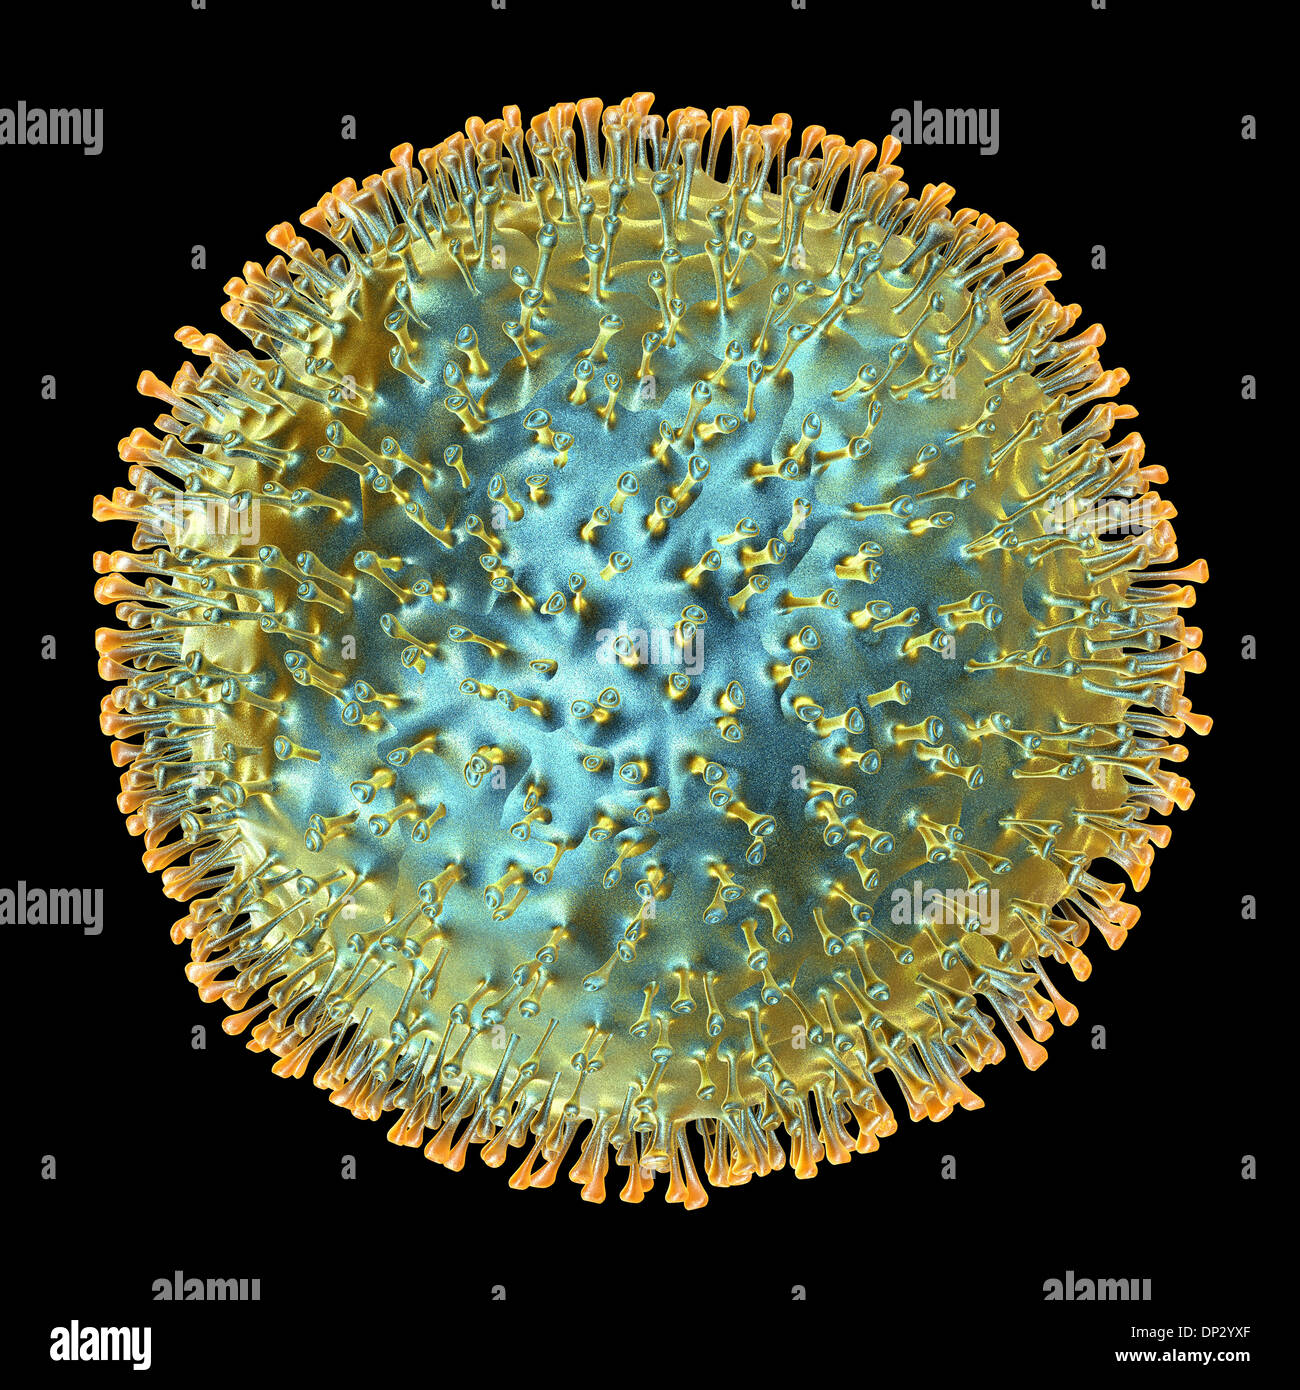 El virus de la influenza aviar, las ilustraciones Foto de stock